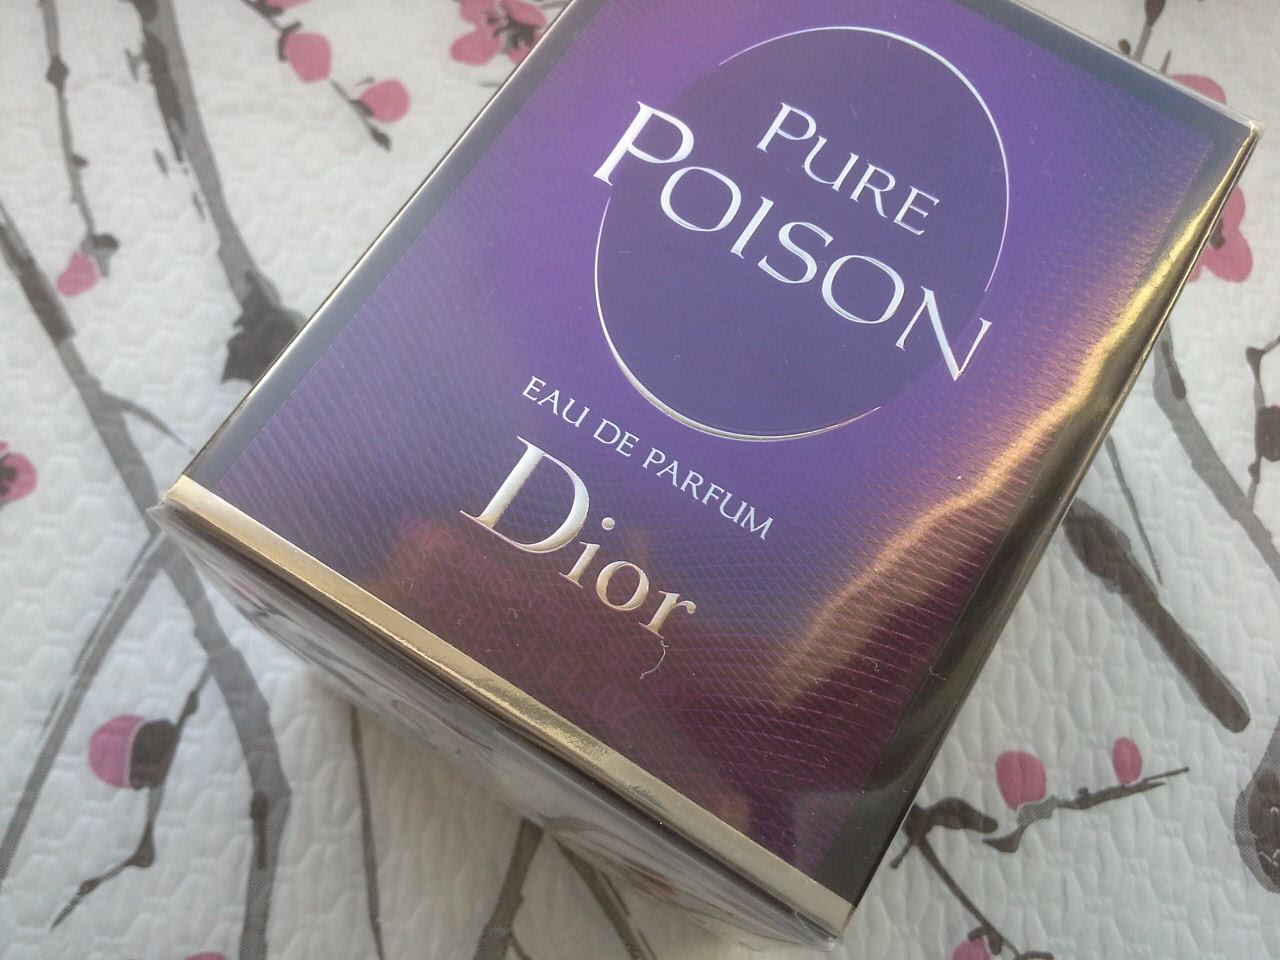 Dior Pure Poison edp 30ml